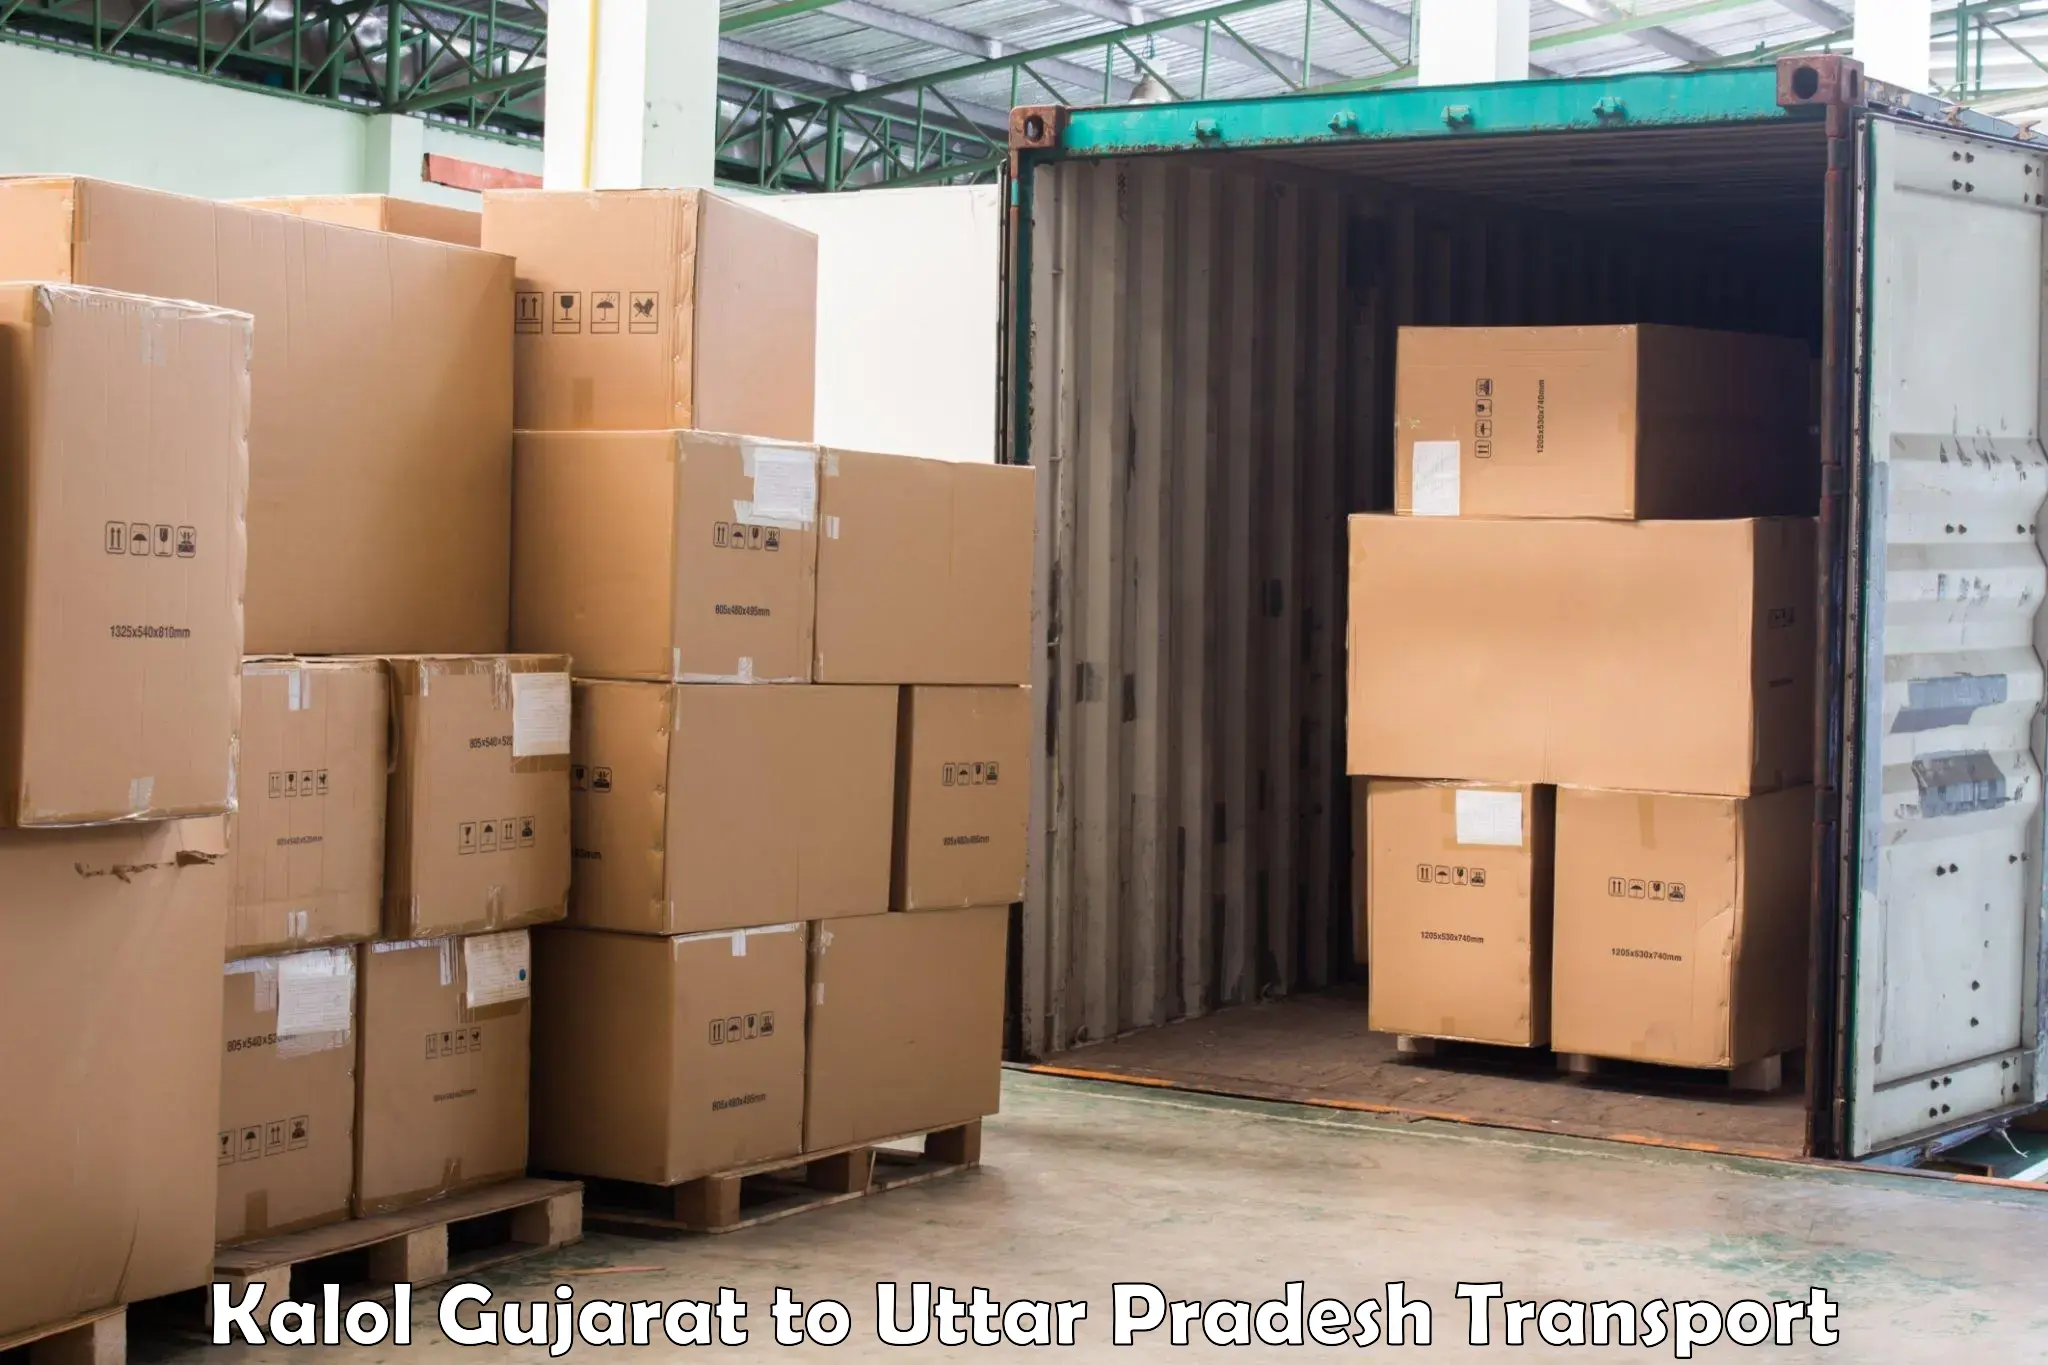 Interstate transport services Kalol Gujarat to Kauriram